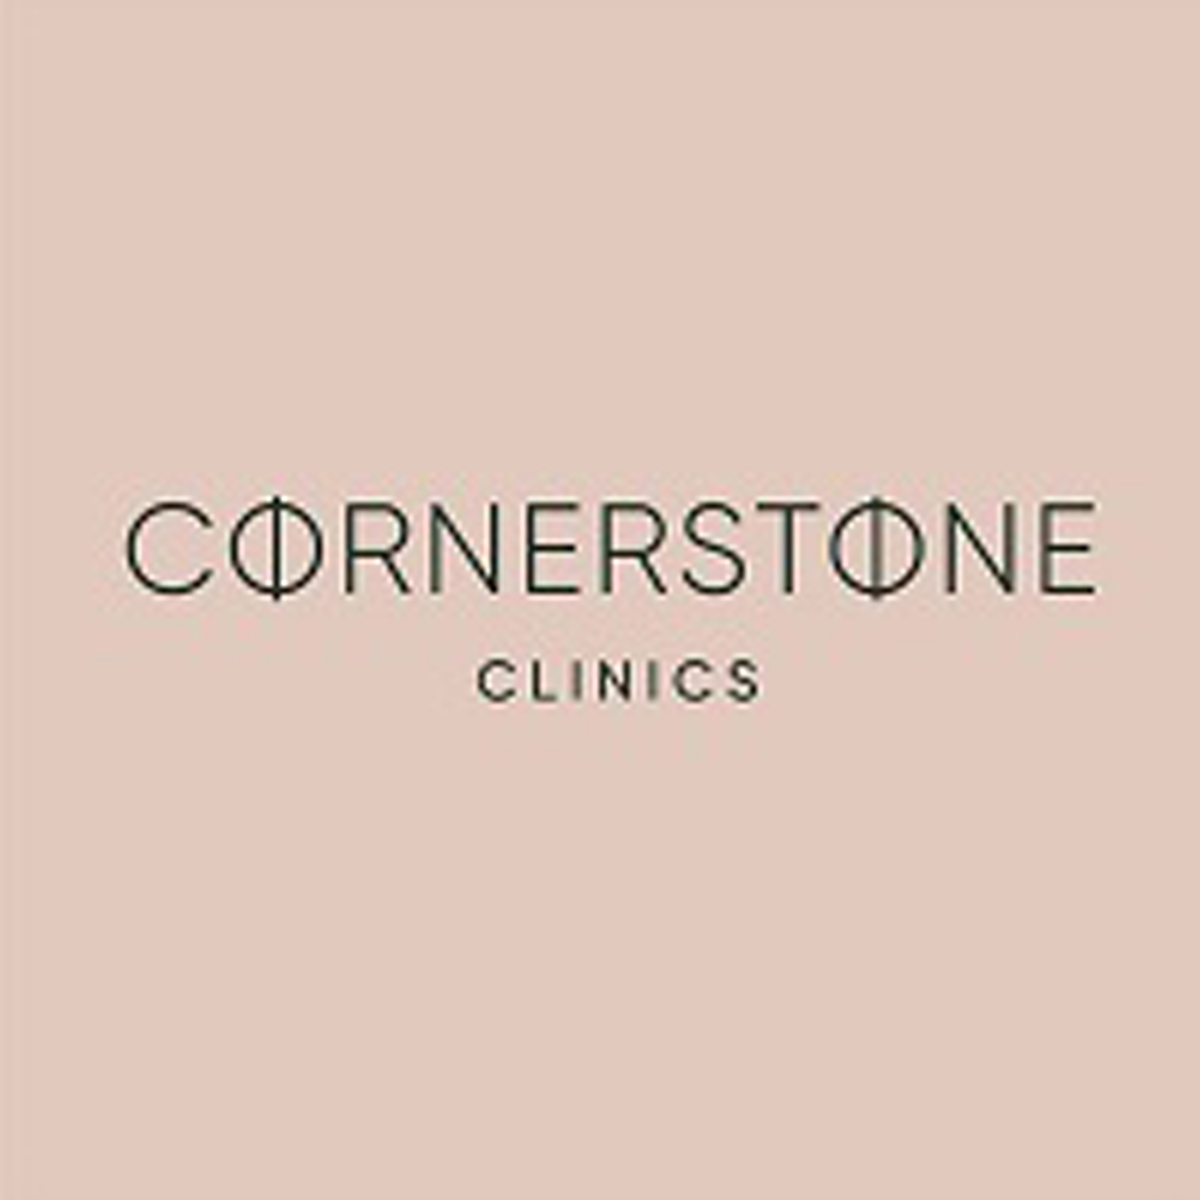 Cornerstone Clinics